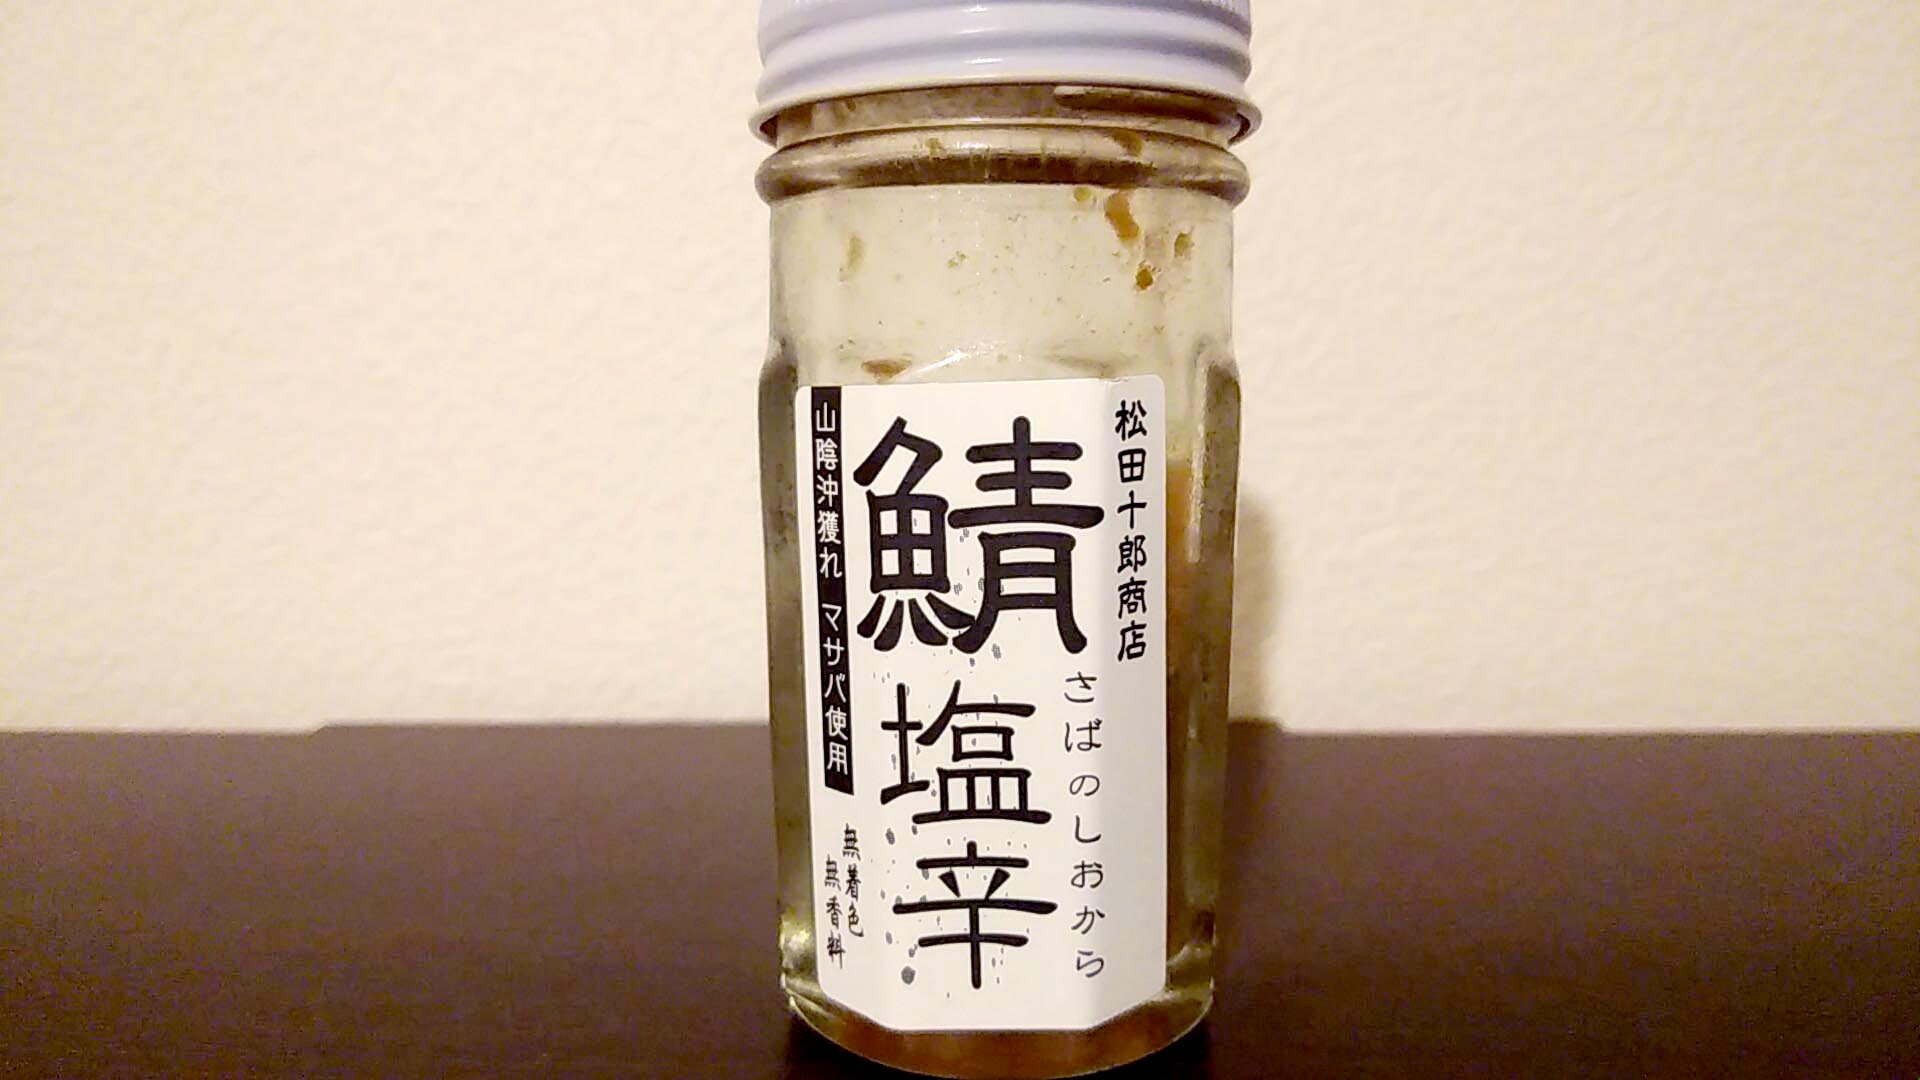 鯖の塩辛（松田十郎商店）は強烈にしょっぱい、けど衝撃的にうまい島根の珍味。小指の先ほどのひとかけらでご飯一膳ペロリといけます。 -  肝臓公司（かんぞうこうし）